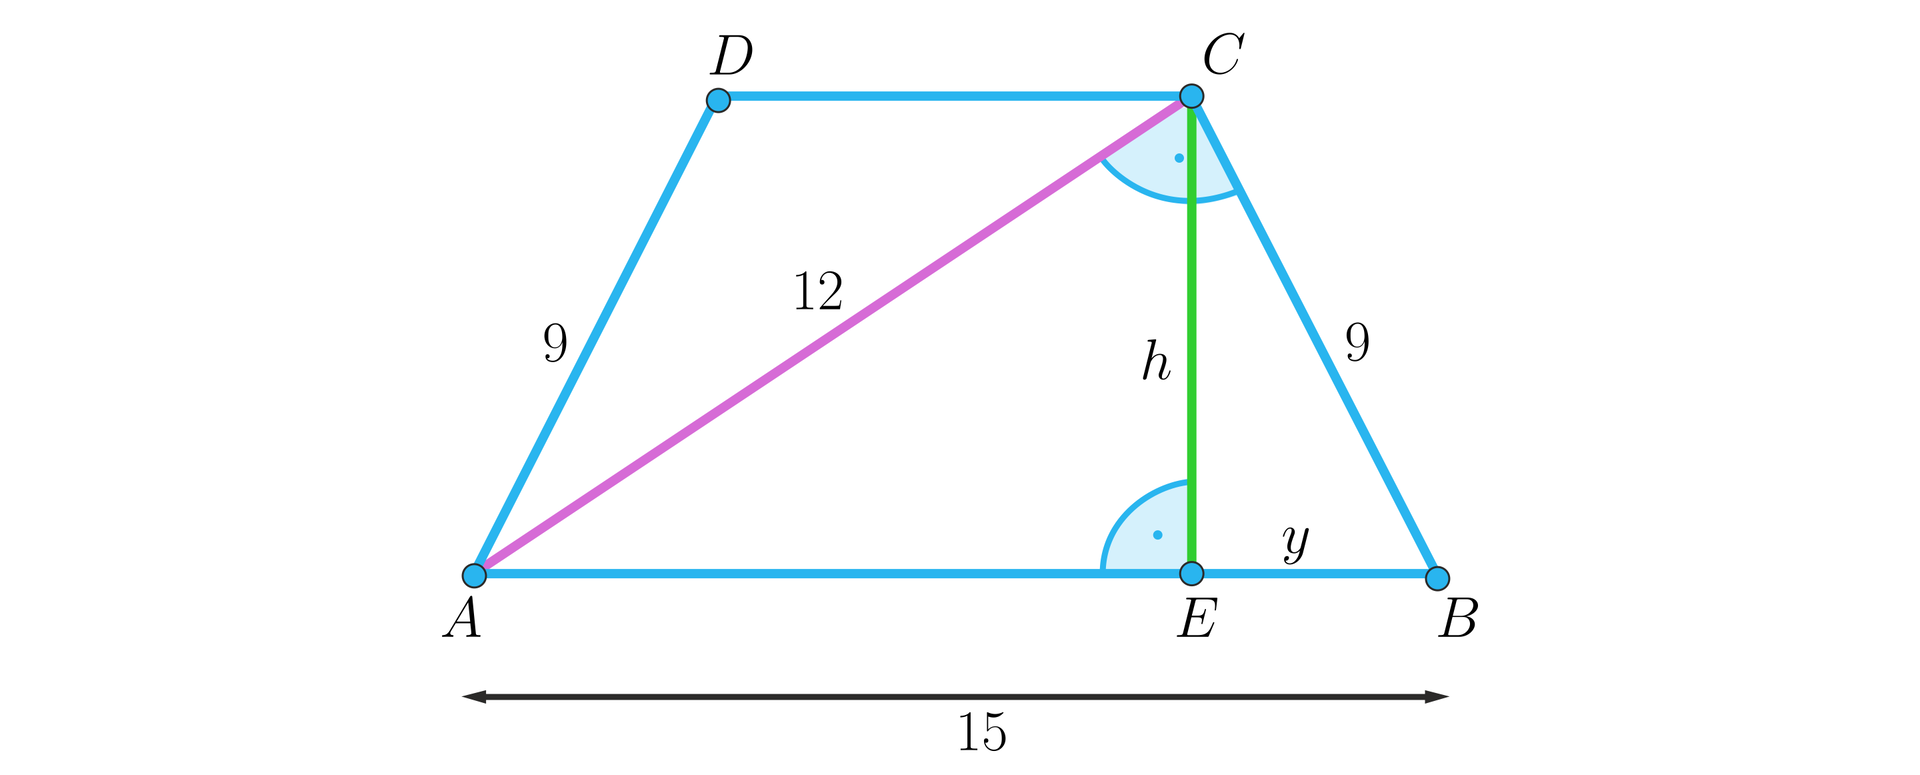 Ilustracja przedstawia trapez równoramienny A B C D. Dłuższa podstawa AB ma długość 15, ramiona mają długość dziewięć. Przekątna AC ma długość 12, przekątna ta jest pod kątem prostym do ramienia BC. W trapezie zaznaczono jego wysokość h, która ma swój wierzchołek w punkcie C a spodek E znajduje się na podstawie AE. Odcinek EB podpisano literą y.